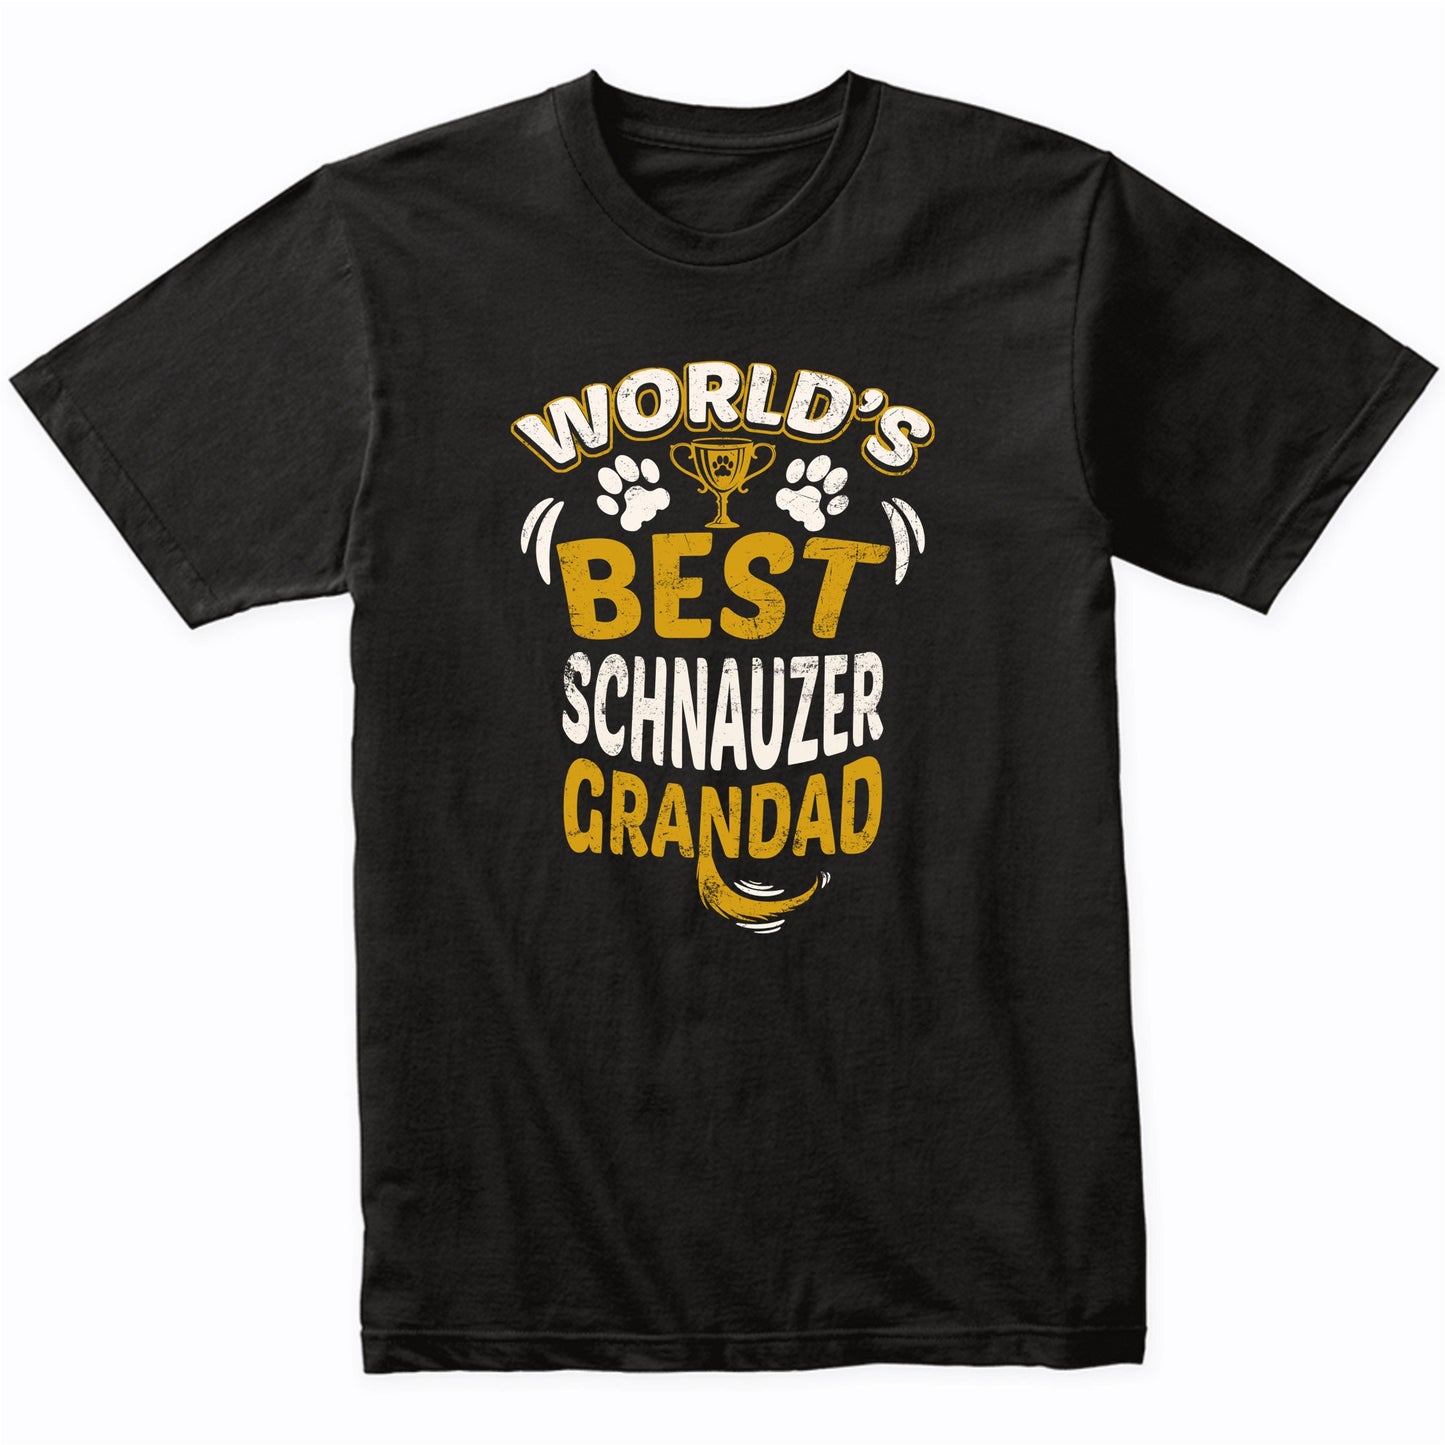 World's Best Schnauzer Grandad Graphic T-Shirt